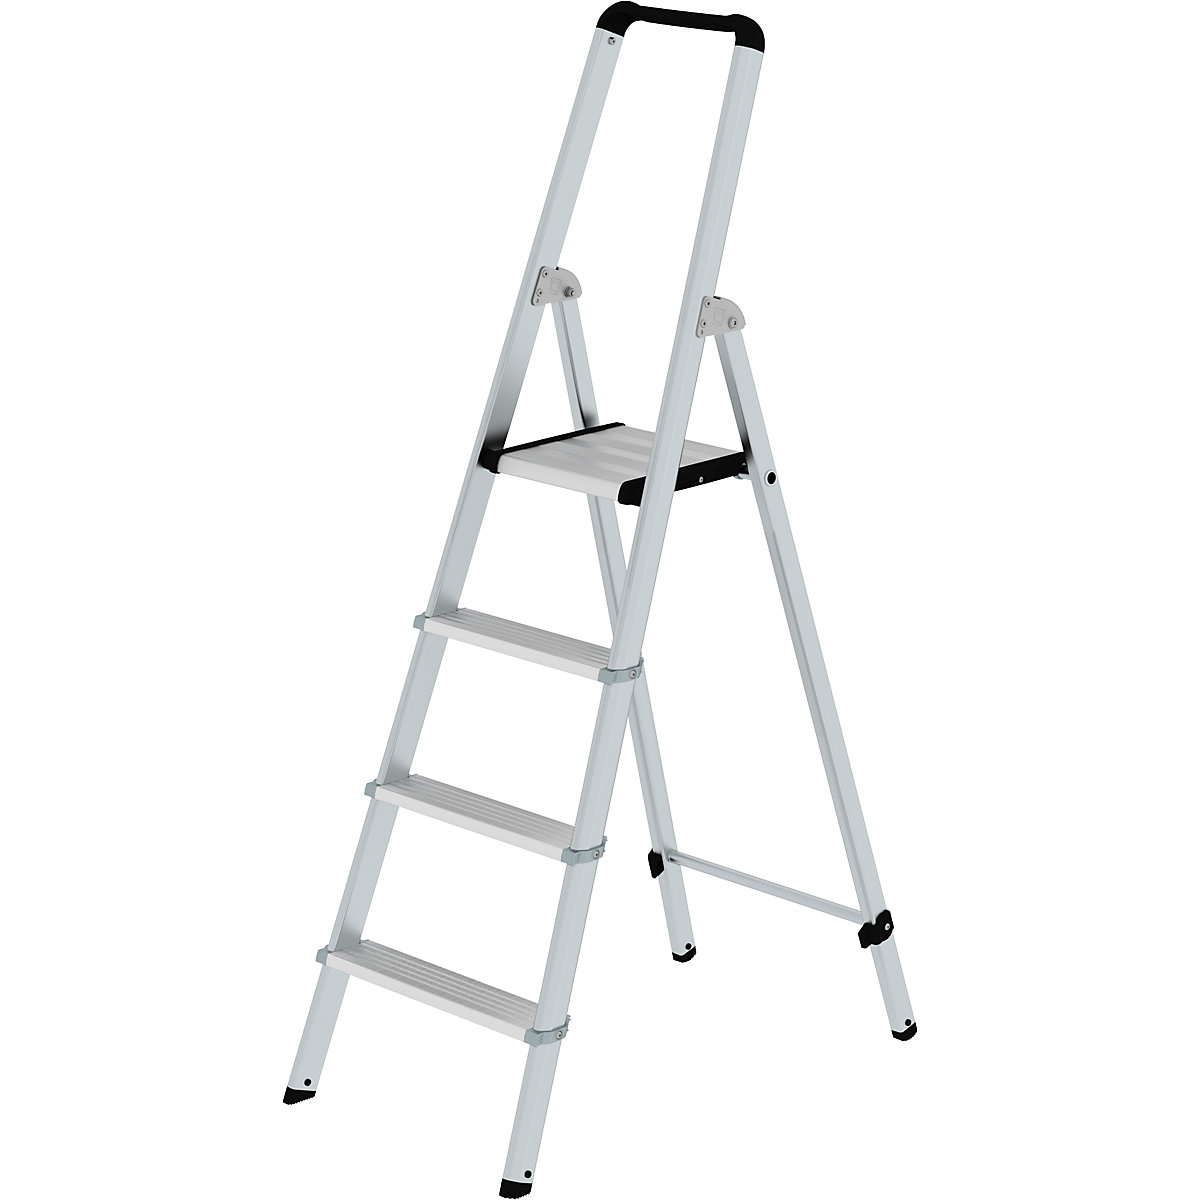 Hliníkový stojaci rebrík so stupňami, pochôdzny z jednej strany – MUNK, eloxované, s ergonomicky tvarovanou stojinou a odkladacou miskou, 4 stupne